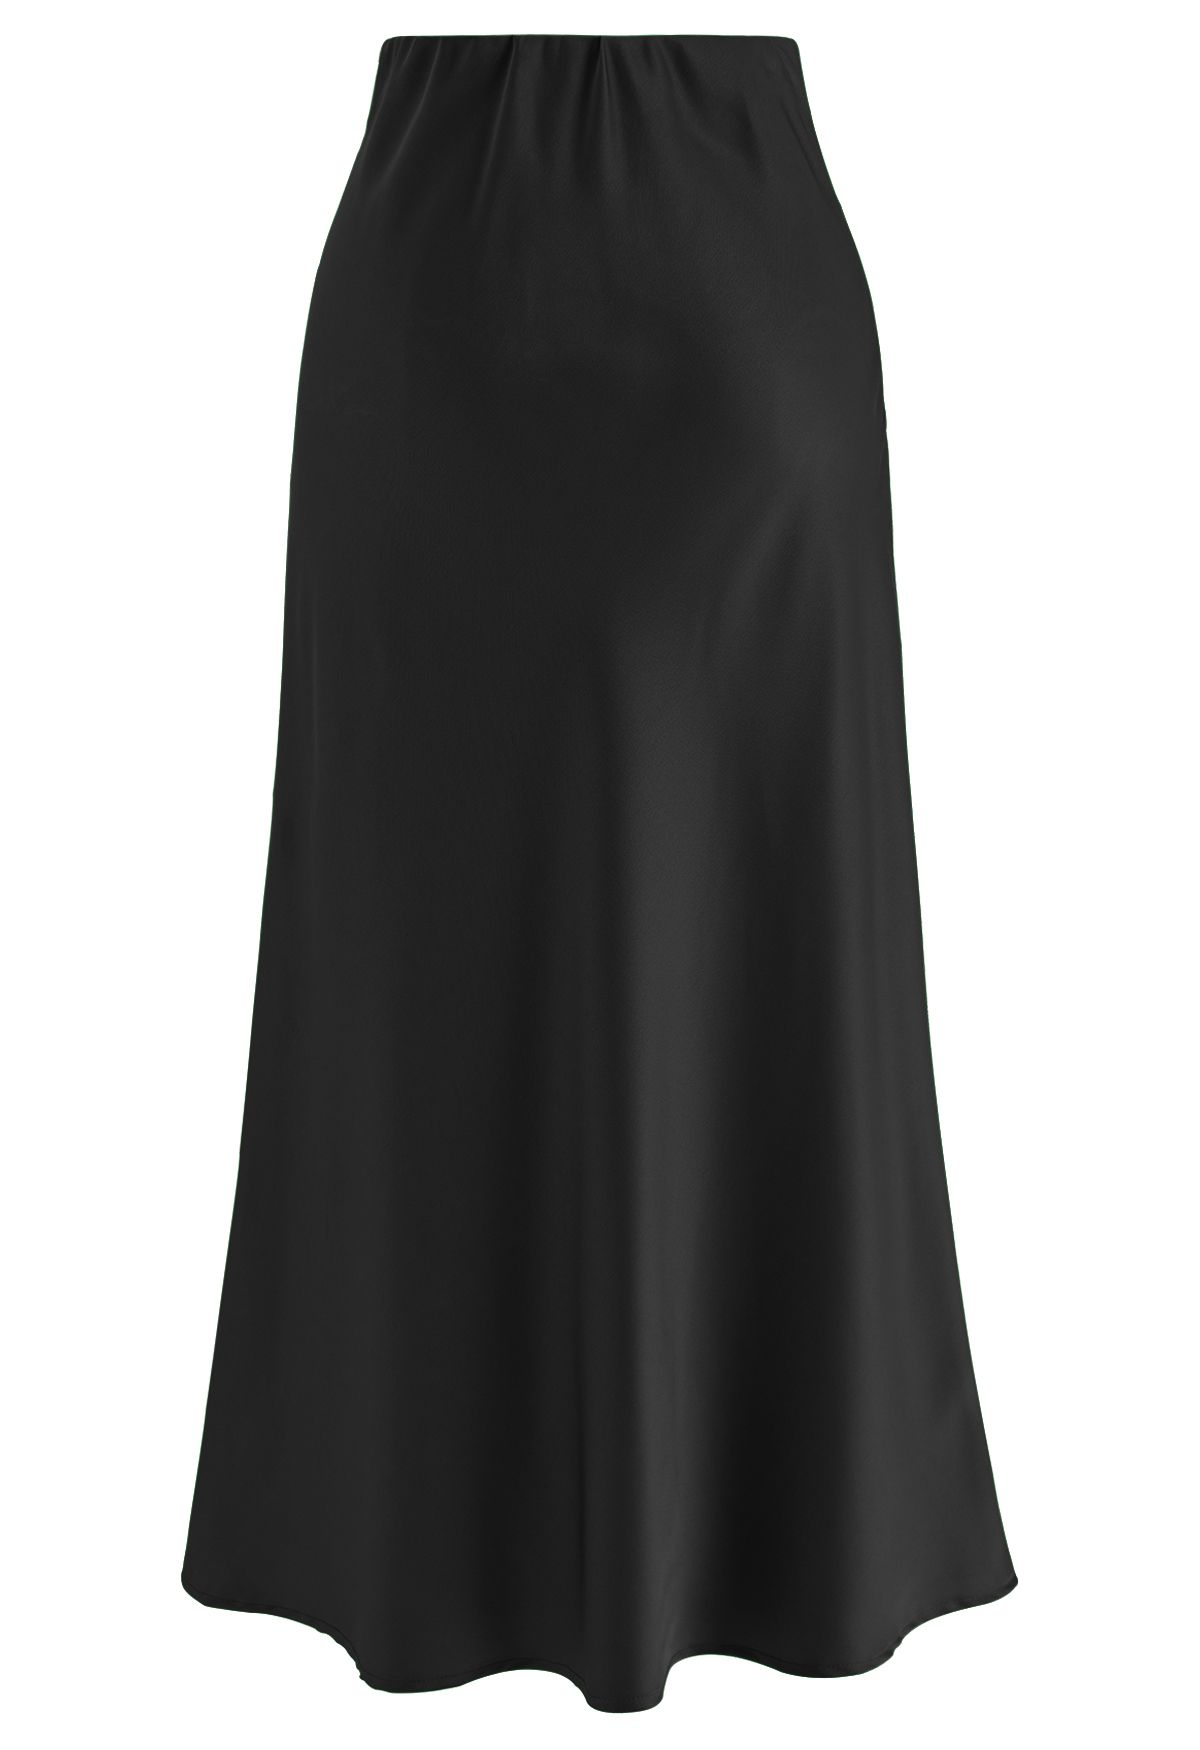 Satin Finish Bias Cut Midi Skirt in Black